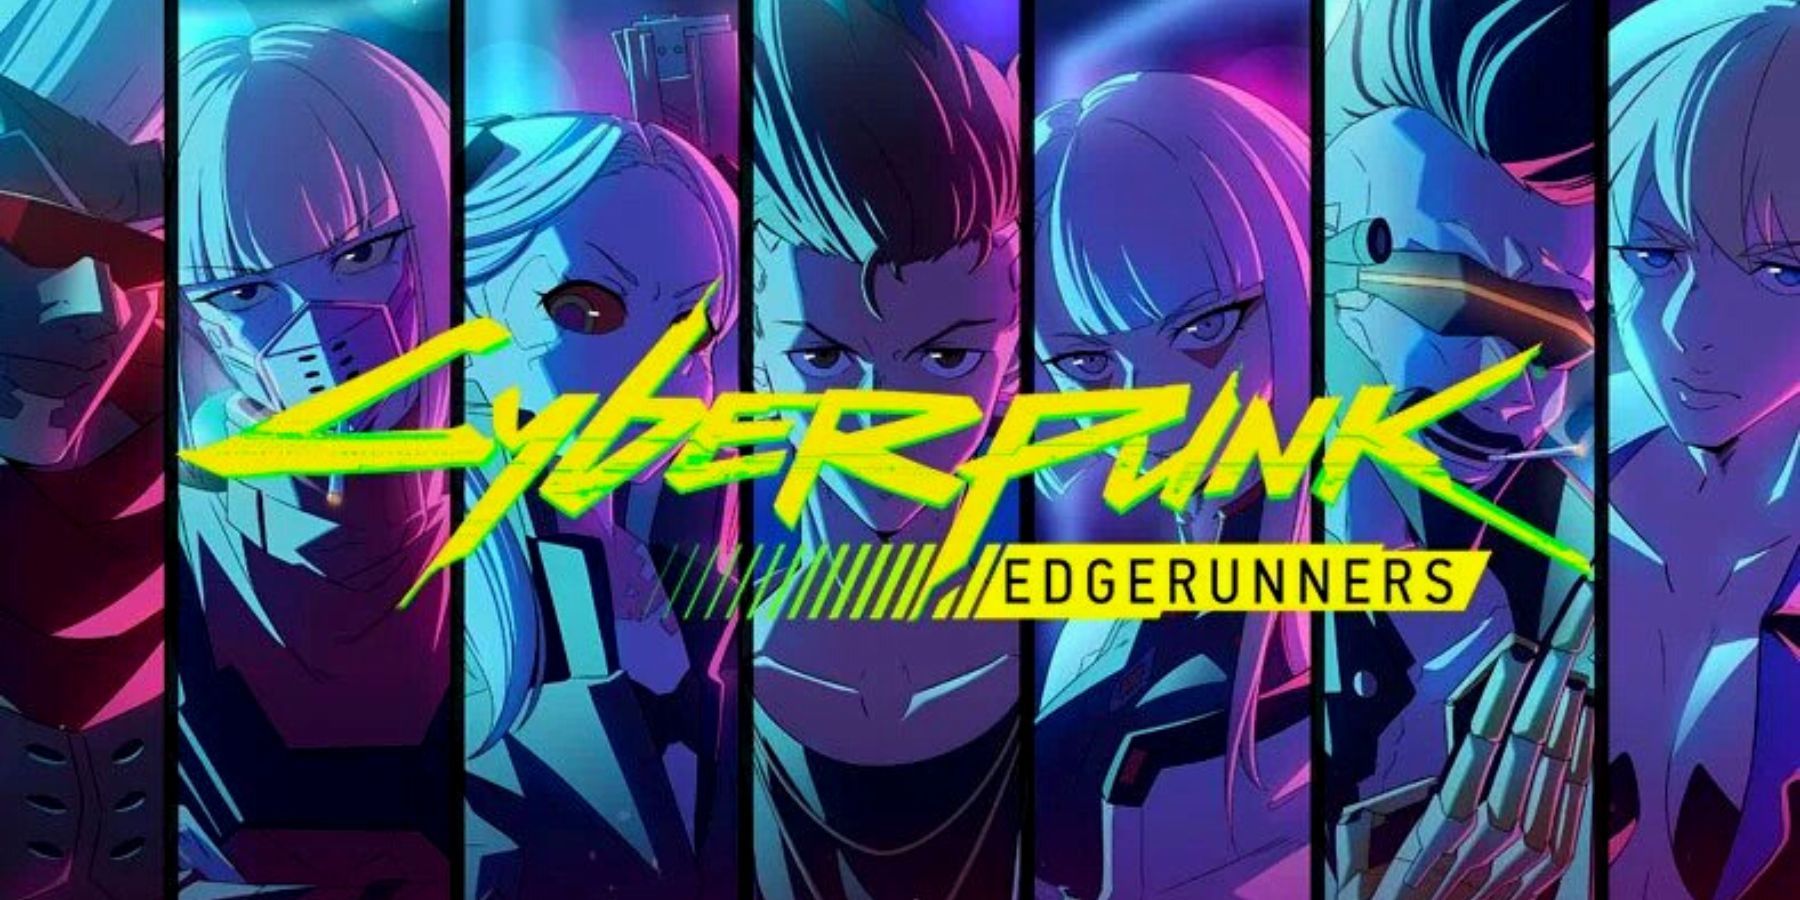 Cyberpunk Edgerunners  Official Trailer Studio Trigger Version   Netflix  YouTube